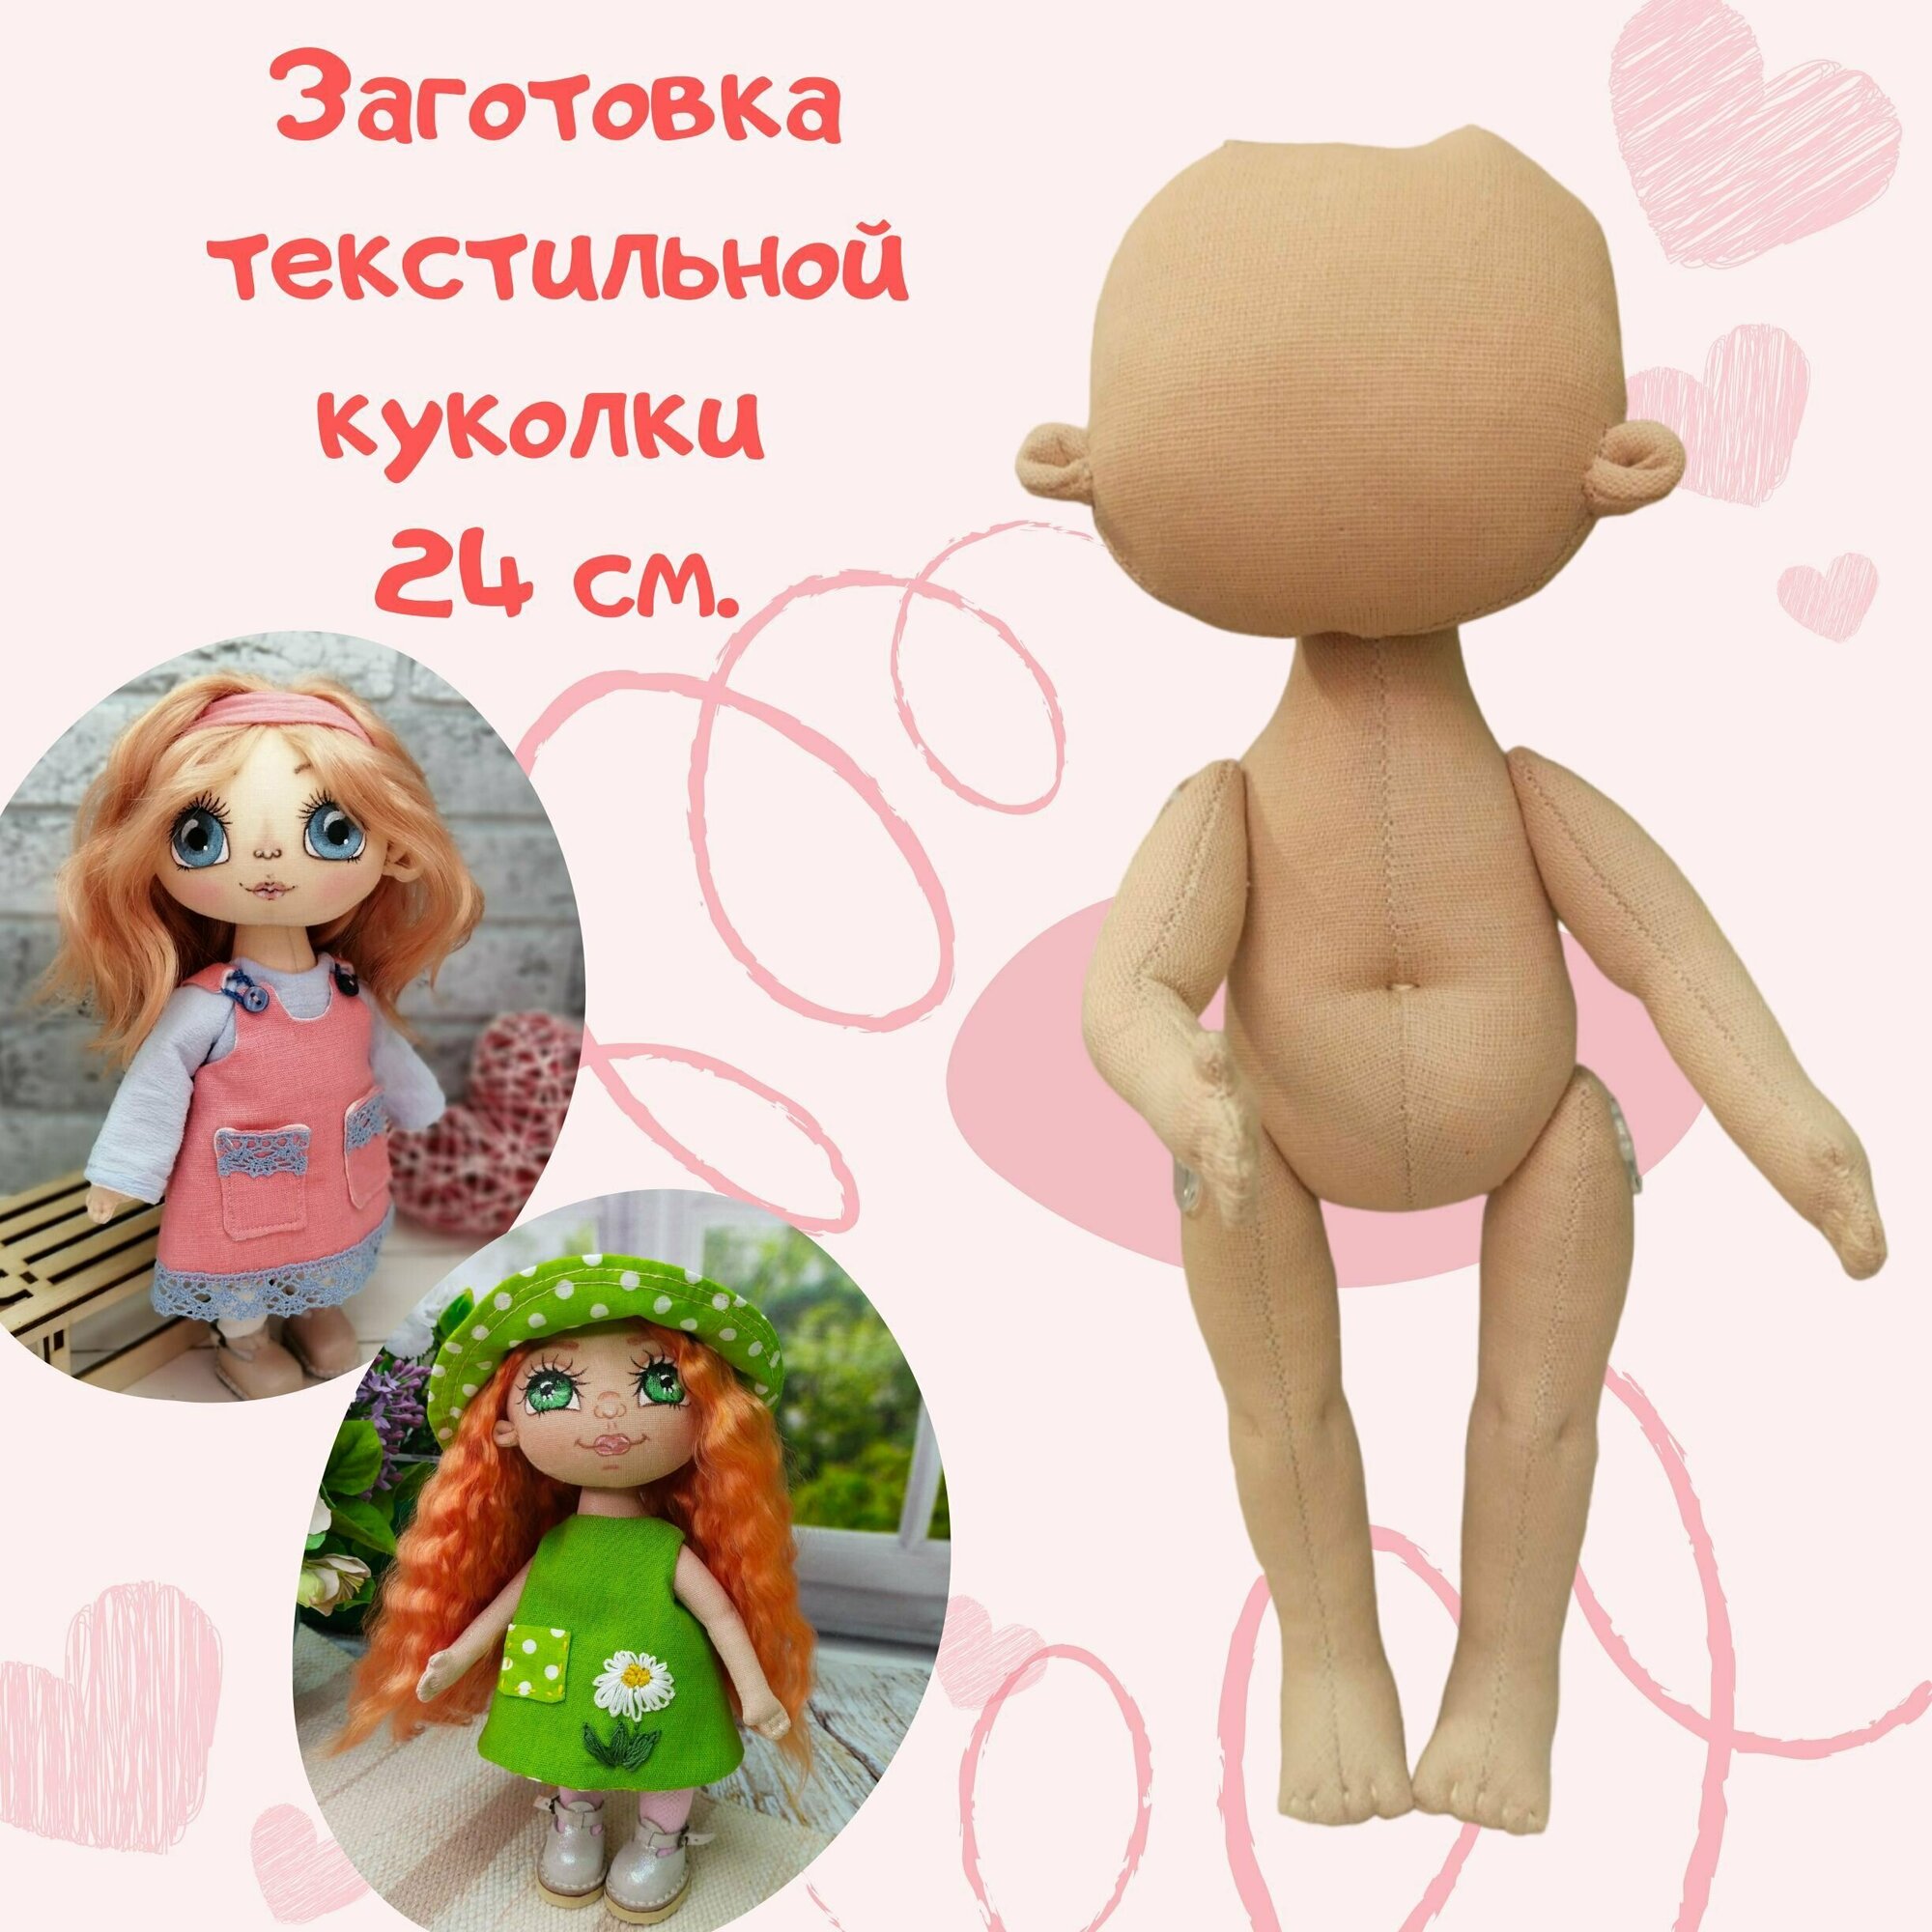 Кукла текстильная 24 см. (заготовка)